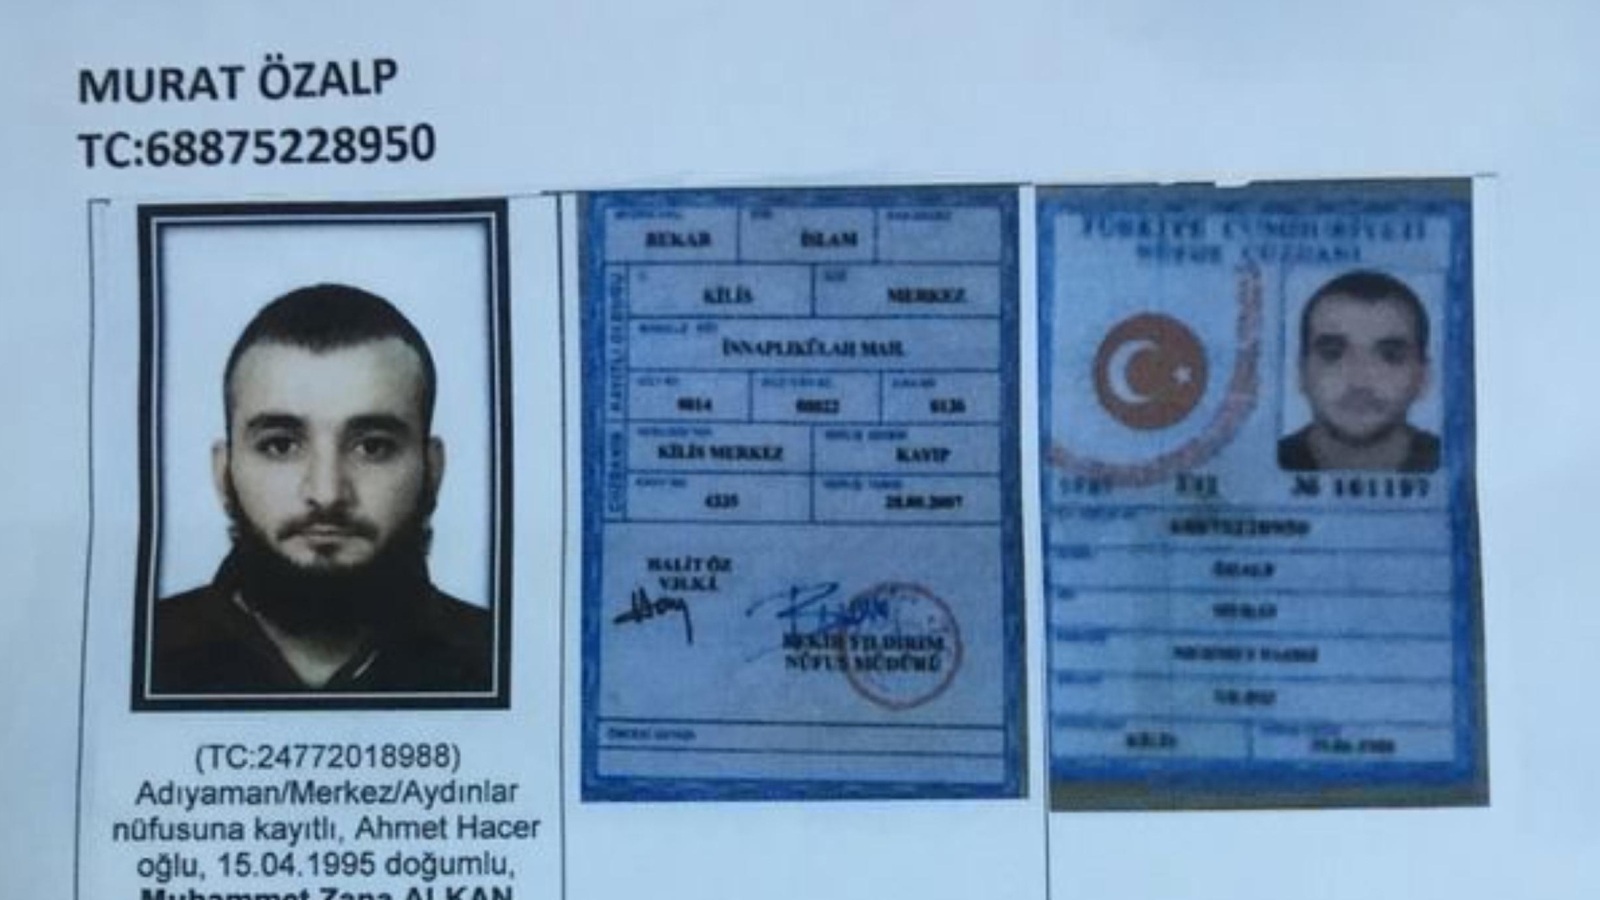 الأمن التركي وزع مؤخرا هويات لمسلحين يلاحقهم بتهمة الانتماء لتنظيم الدولة (الأوروبية)